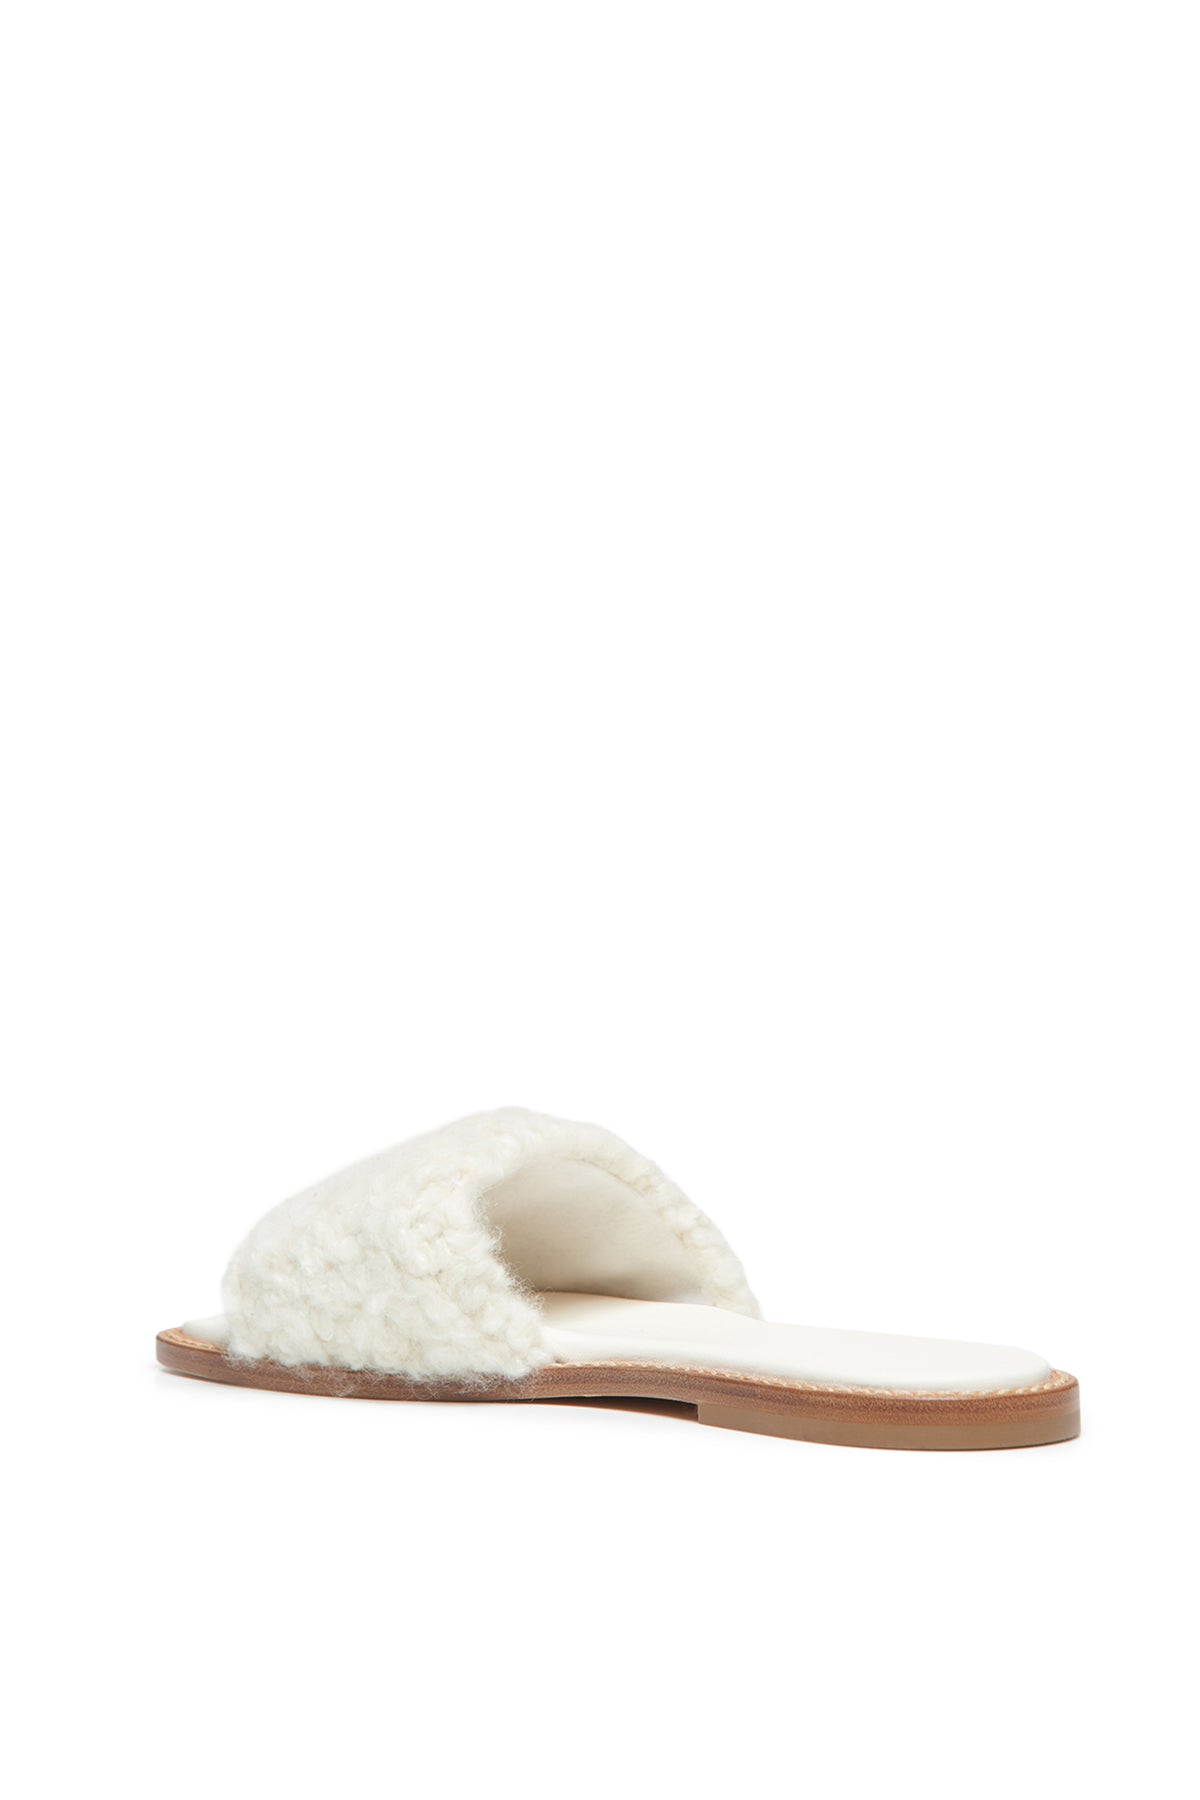 Ballast Slide Sandal in Ivory Cashmere